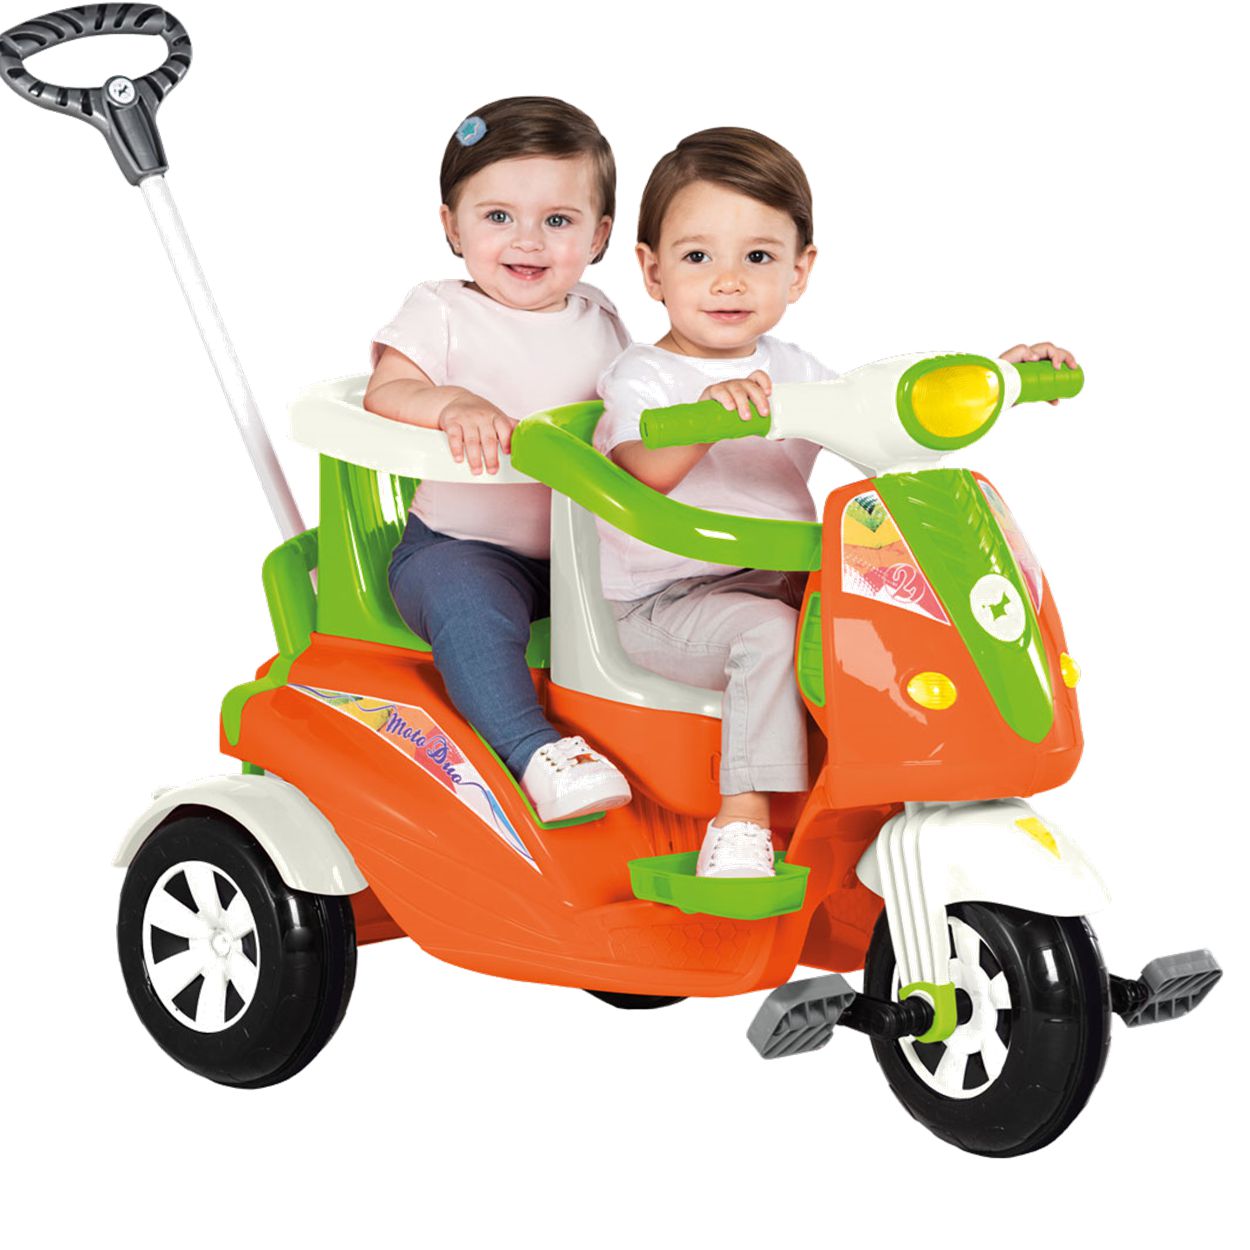 As motas para crianças mais originais! - Blog de Puericultura e Brinquedos